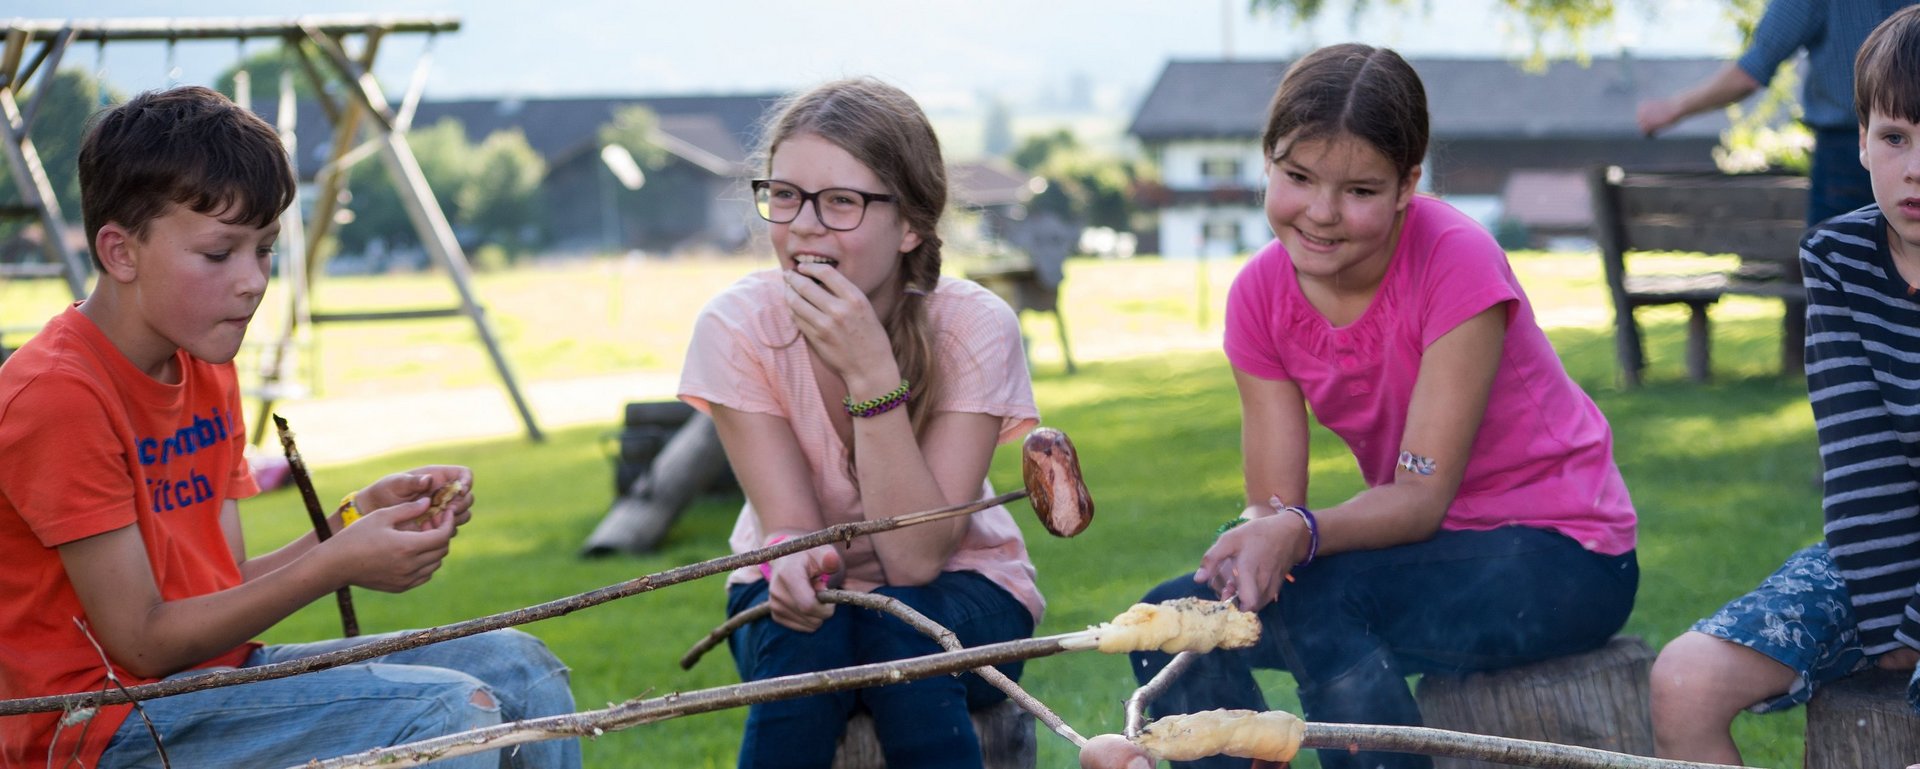 Urlaub auf dem Bauernhof in Bayern ist der perfekte Familienurlaub